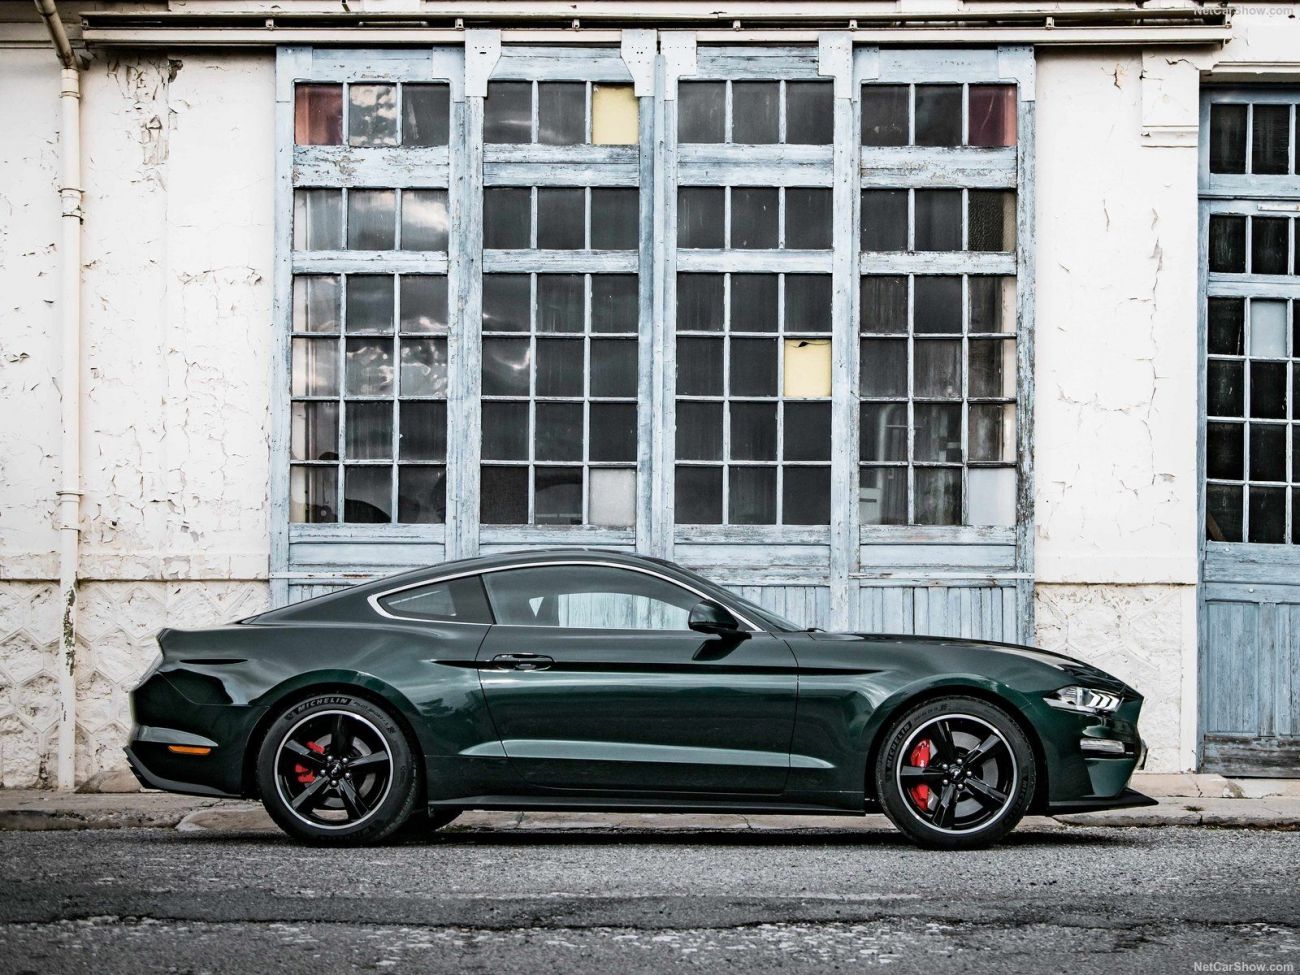 Ford-Mustang_Bullitt-2019-1600-1e.thumb.jpg.e0c95d2c5a383ac91e7fee5a46c4a471.jpg